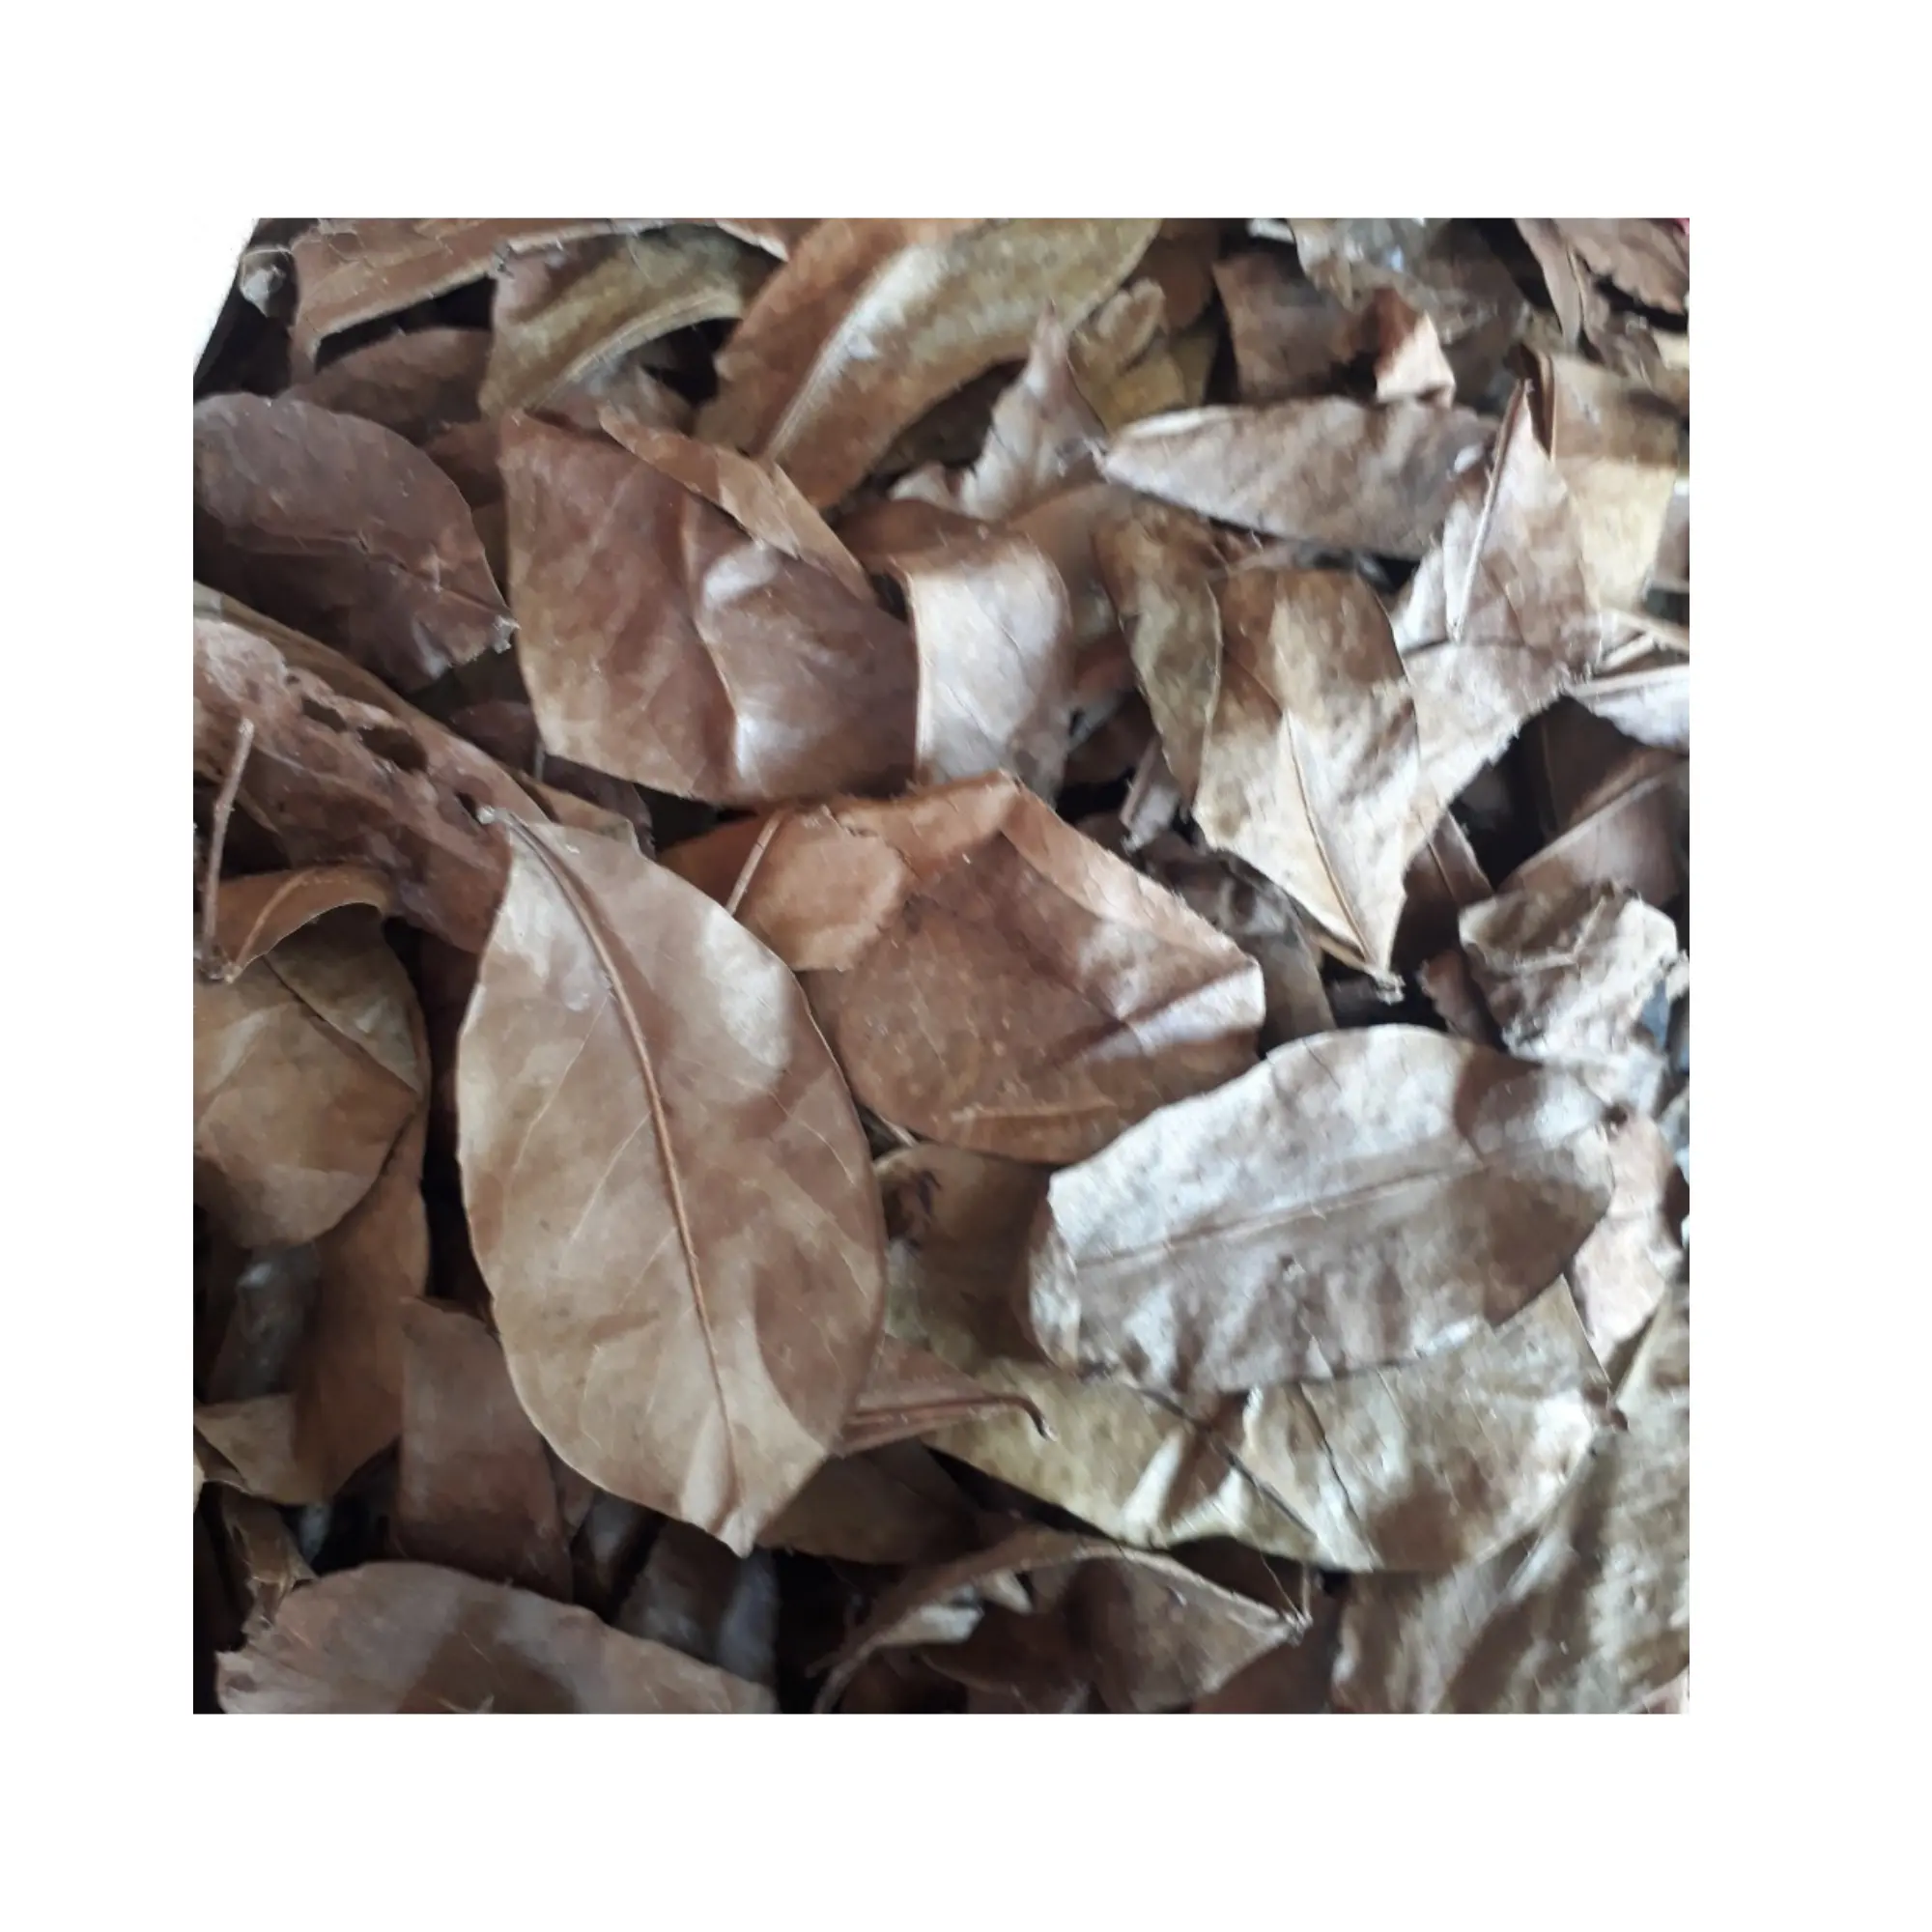 허브 차를위한 유기농 수스프 잎: 면역 지원, 이완 및 전반적인 웰빙에 적합